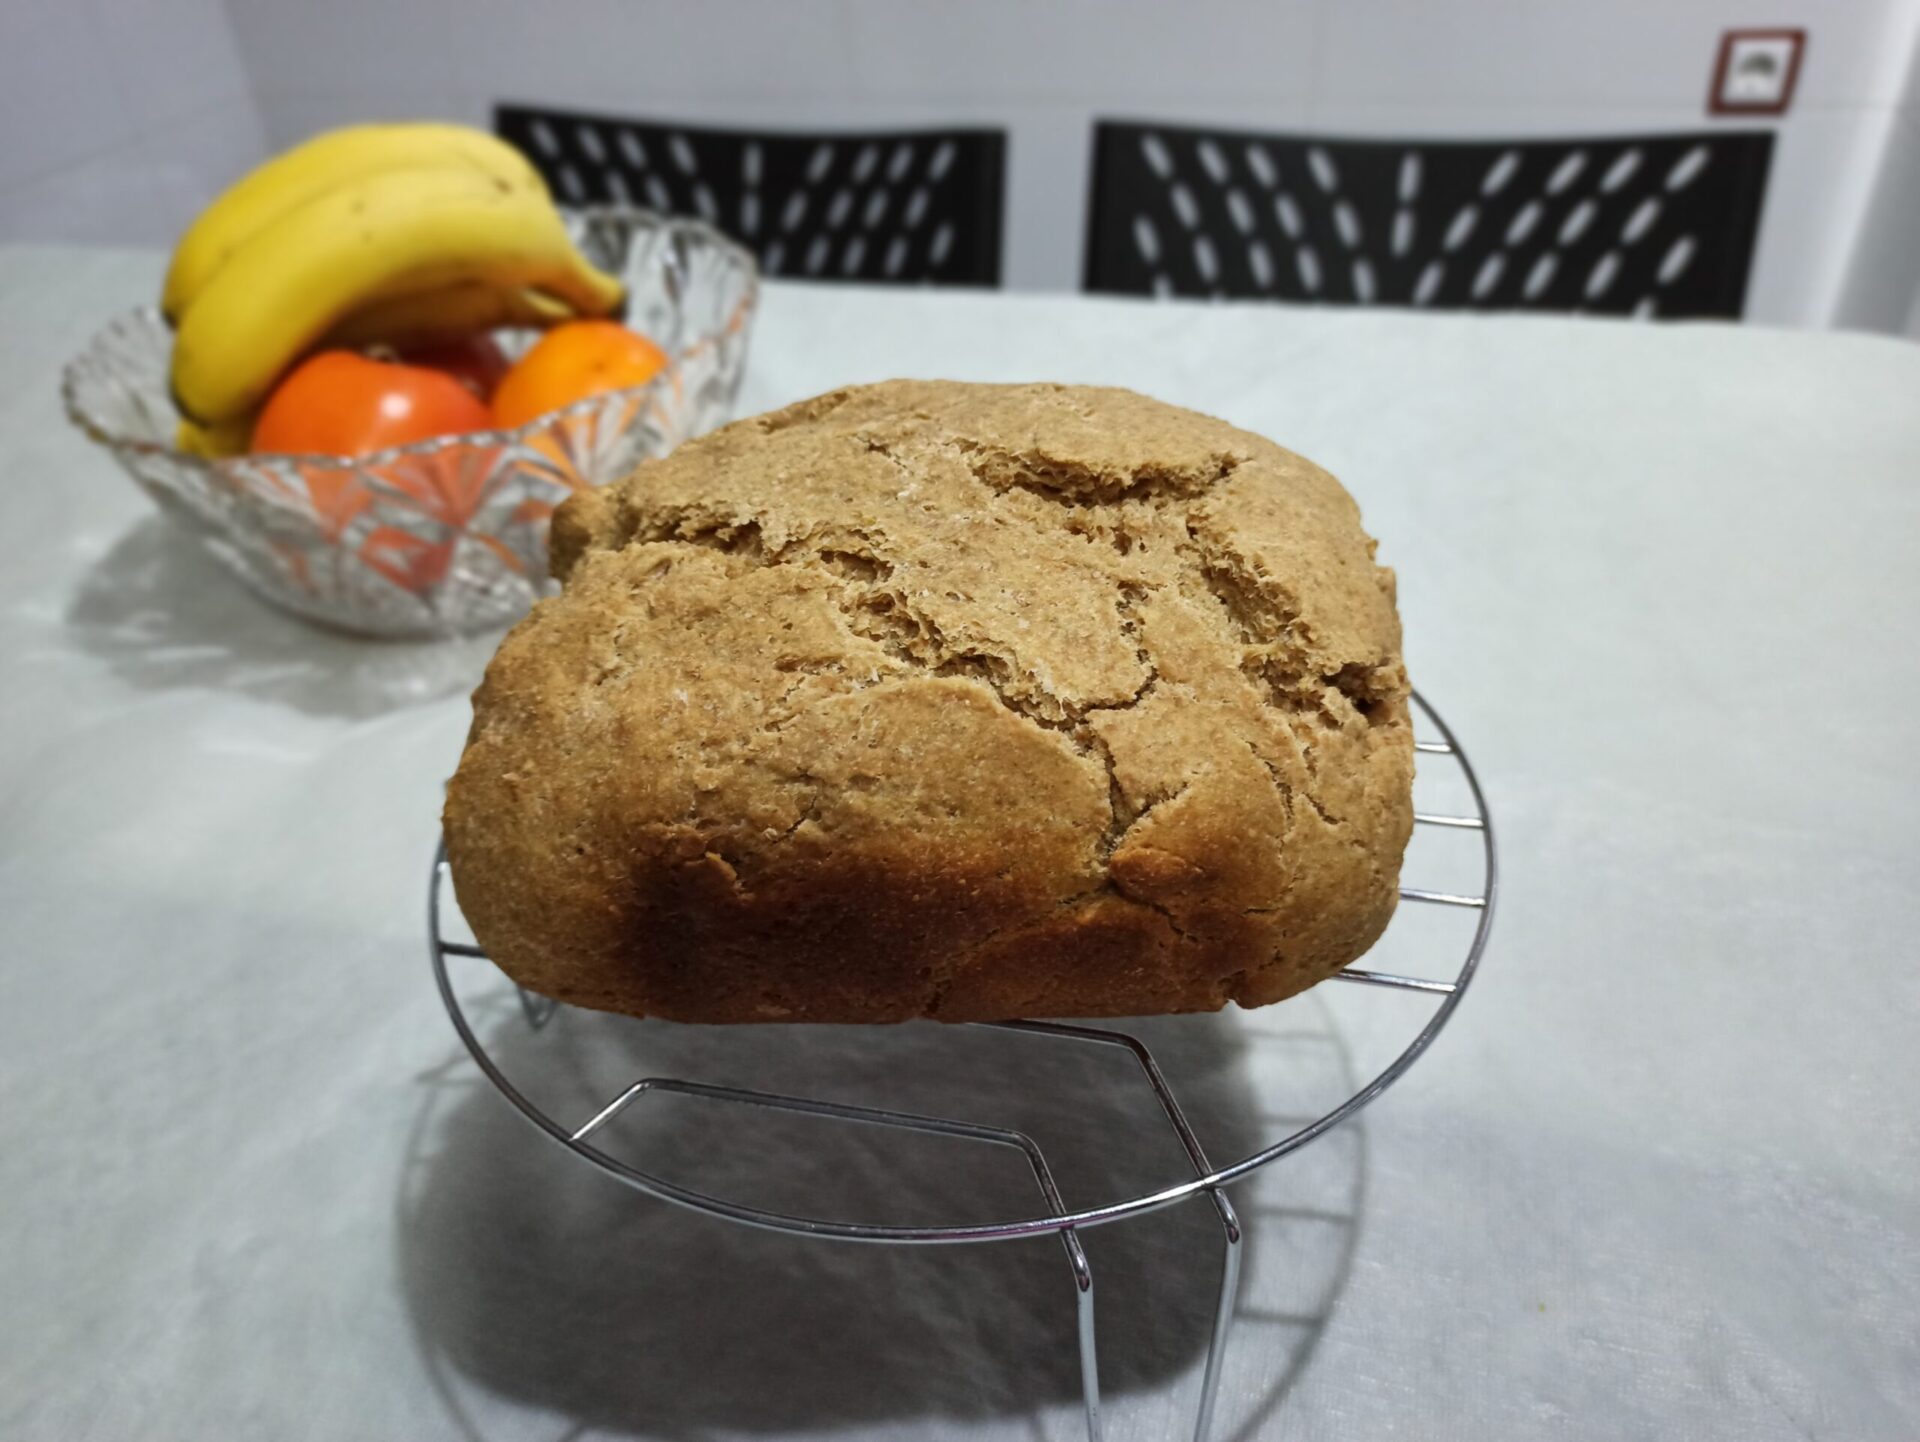 Pan de molde integral de espelta y avena